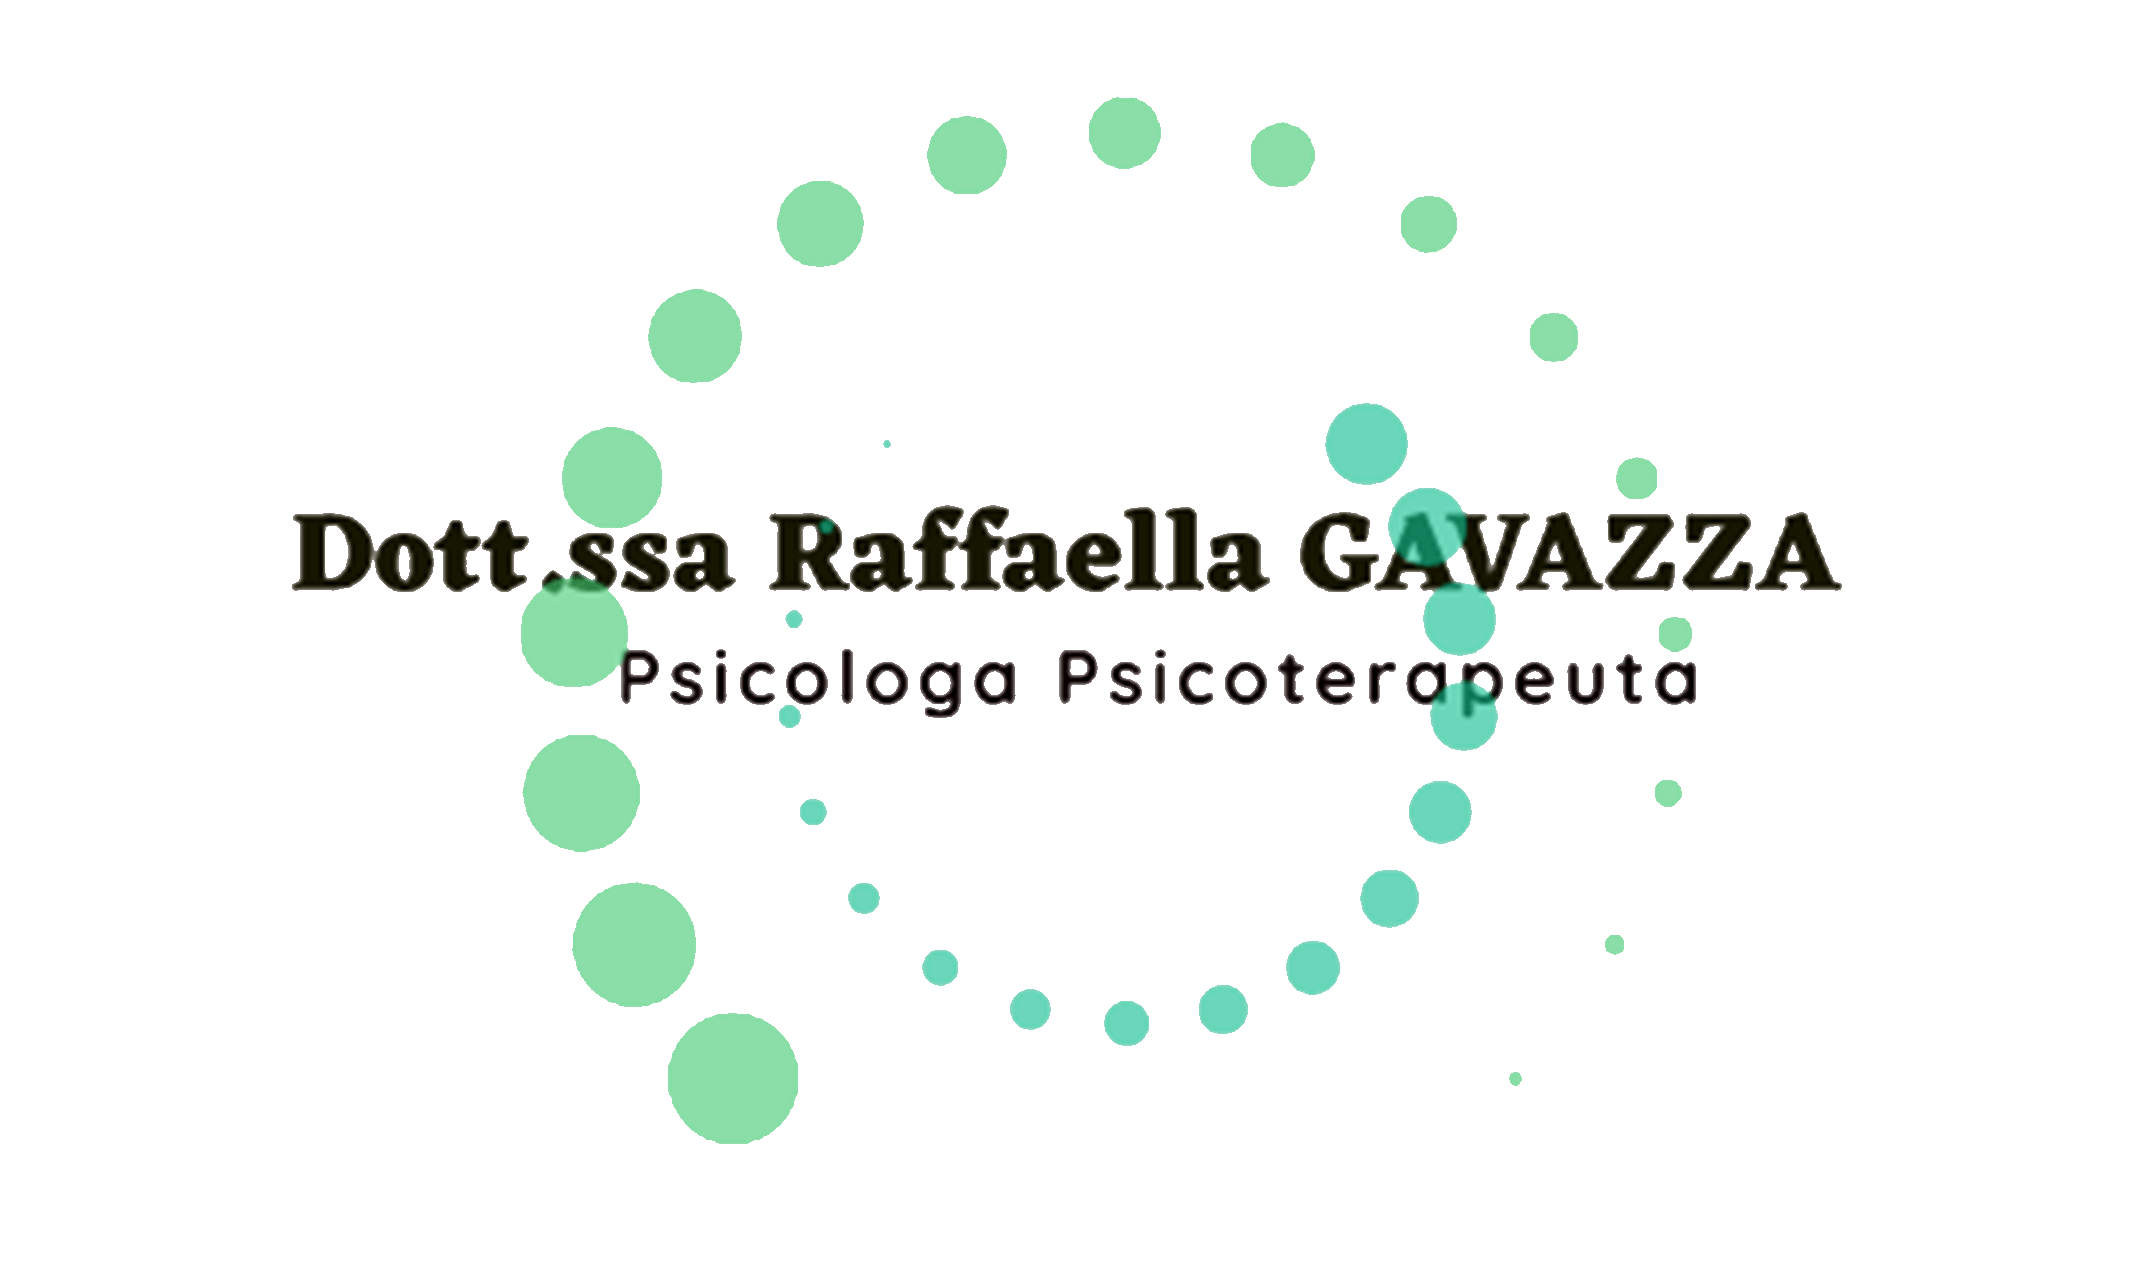 Dottoressa Raffaella Gavazza